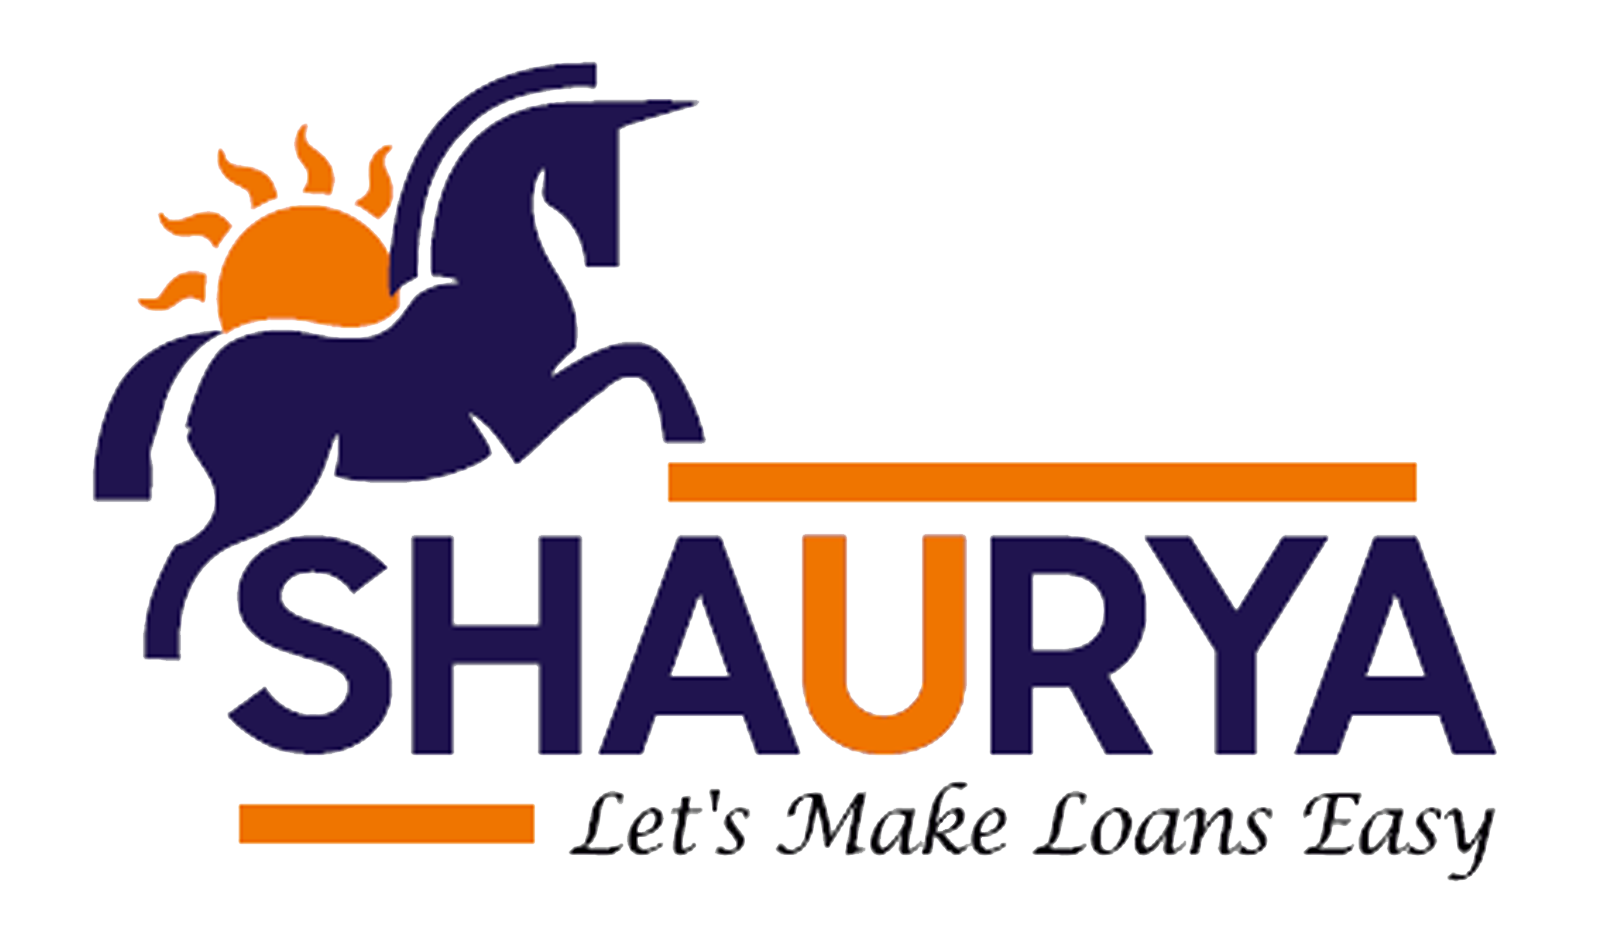 Shaurya Loans